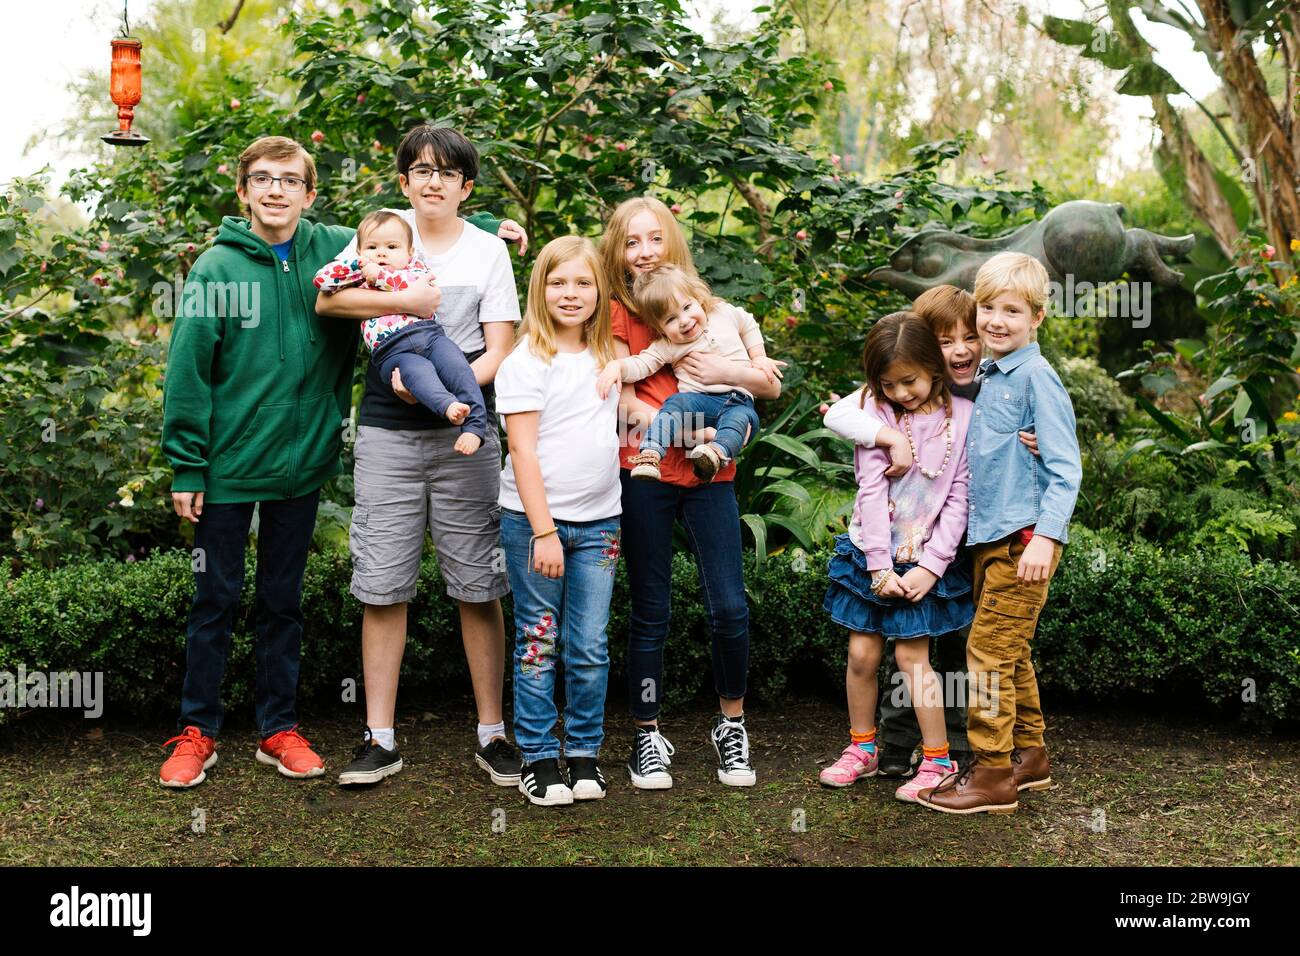 USA, California, Orange County, Gruppe von Kindern (12-17 Monate, 2-3, 6-7, 10-11, 12-13, 14-15) posiert im Garten Stockfoto